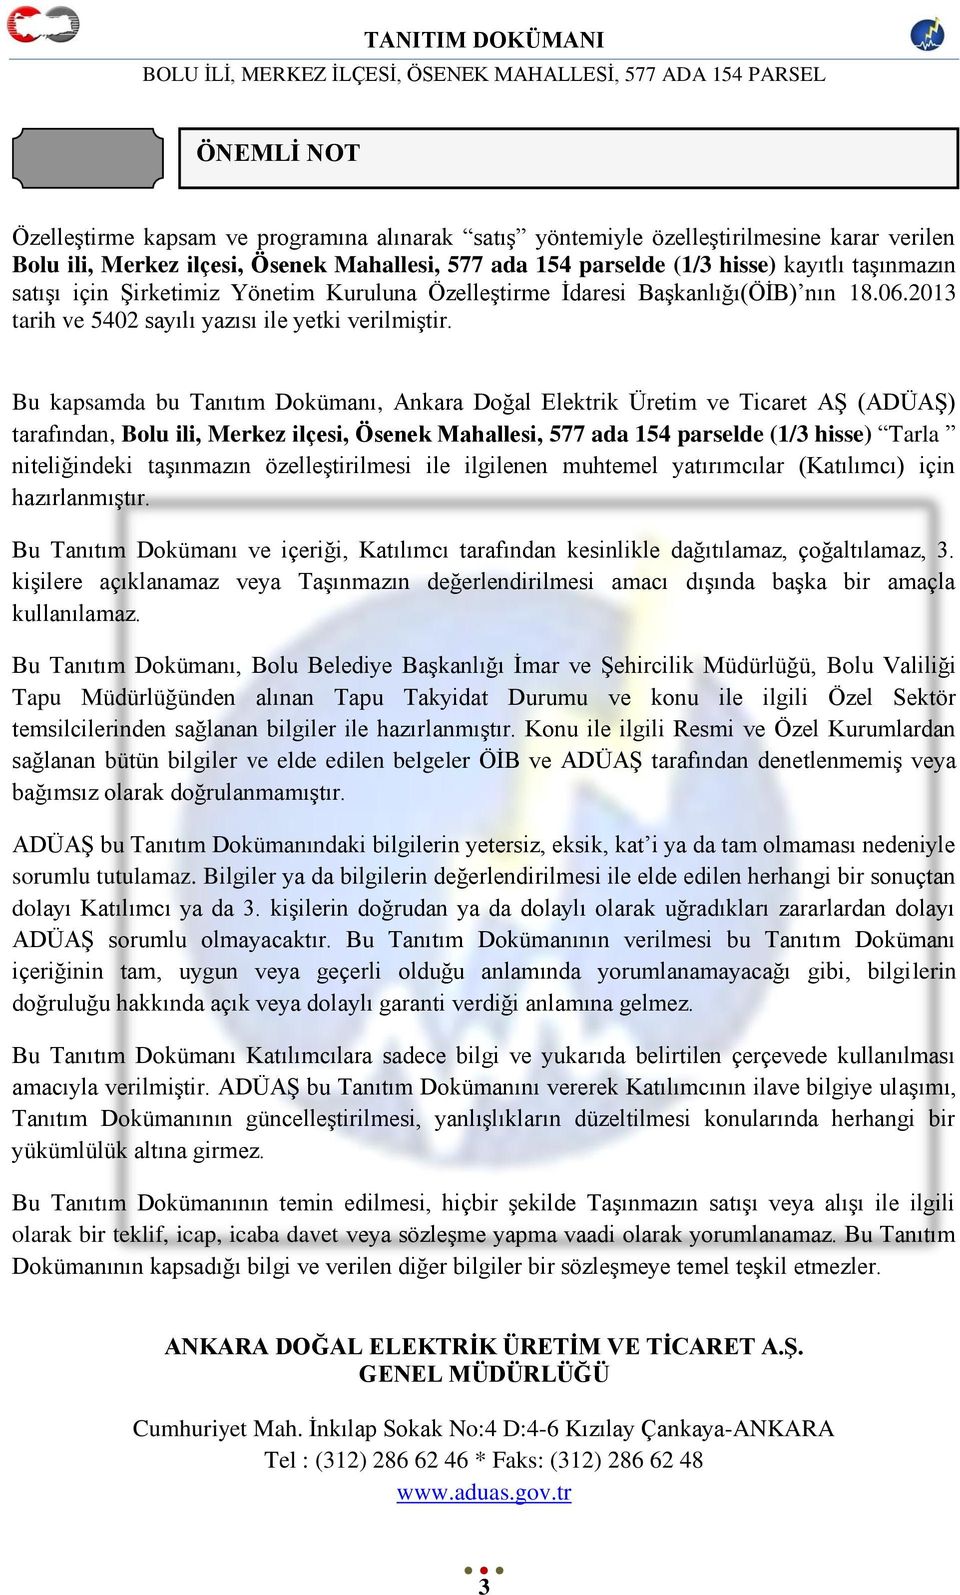 Bu kapsamda bu Tanıtım Dokümanı, Ankara Doğal Elektrik Üretim ve Ticaret Aġ (ADÜAġ) tarafından, Bolu ili, Merkez ilçesi, Ösenek Mahallesi, 577 ada 154 parselde (1/3 hisse) Tarla niteliğindeki